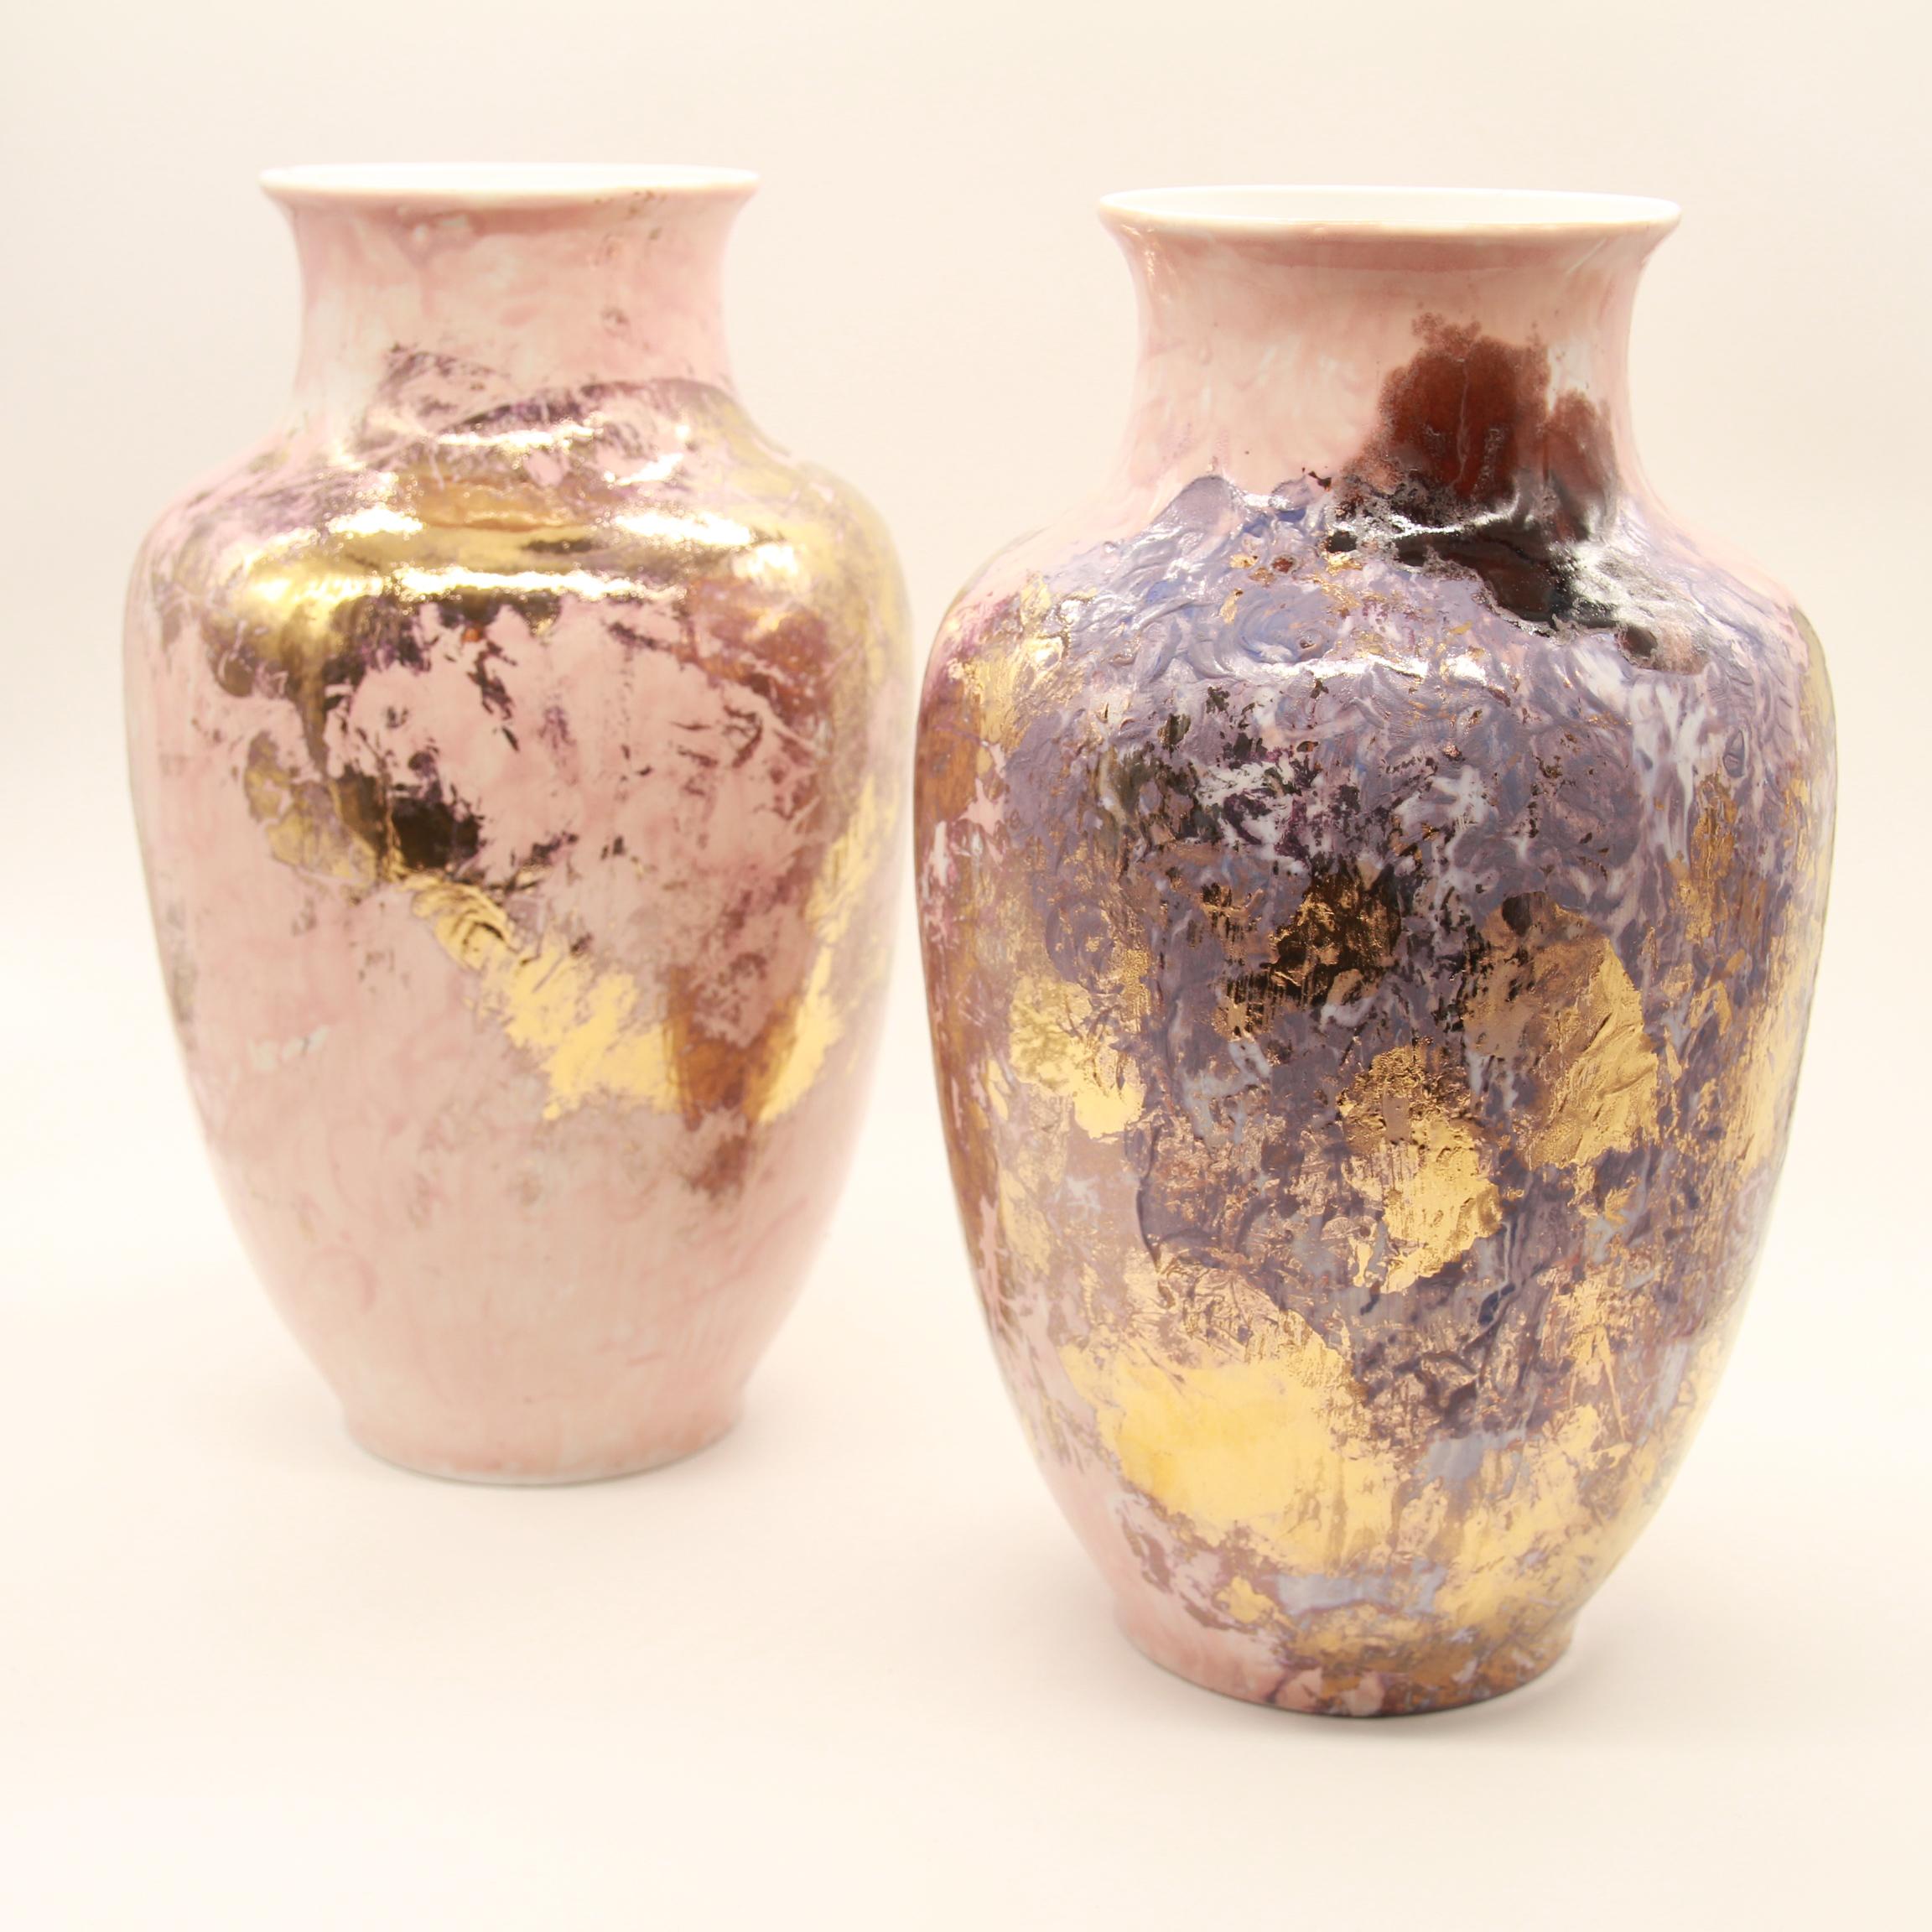 N°1 Vase Series 2 is Presented by Spazio Nobile

Sculptural vase, Limoges Porcelain glazed by Marie Corbin, or 10%.
 